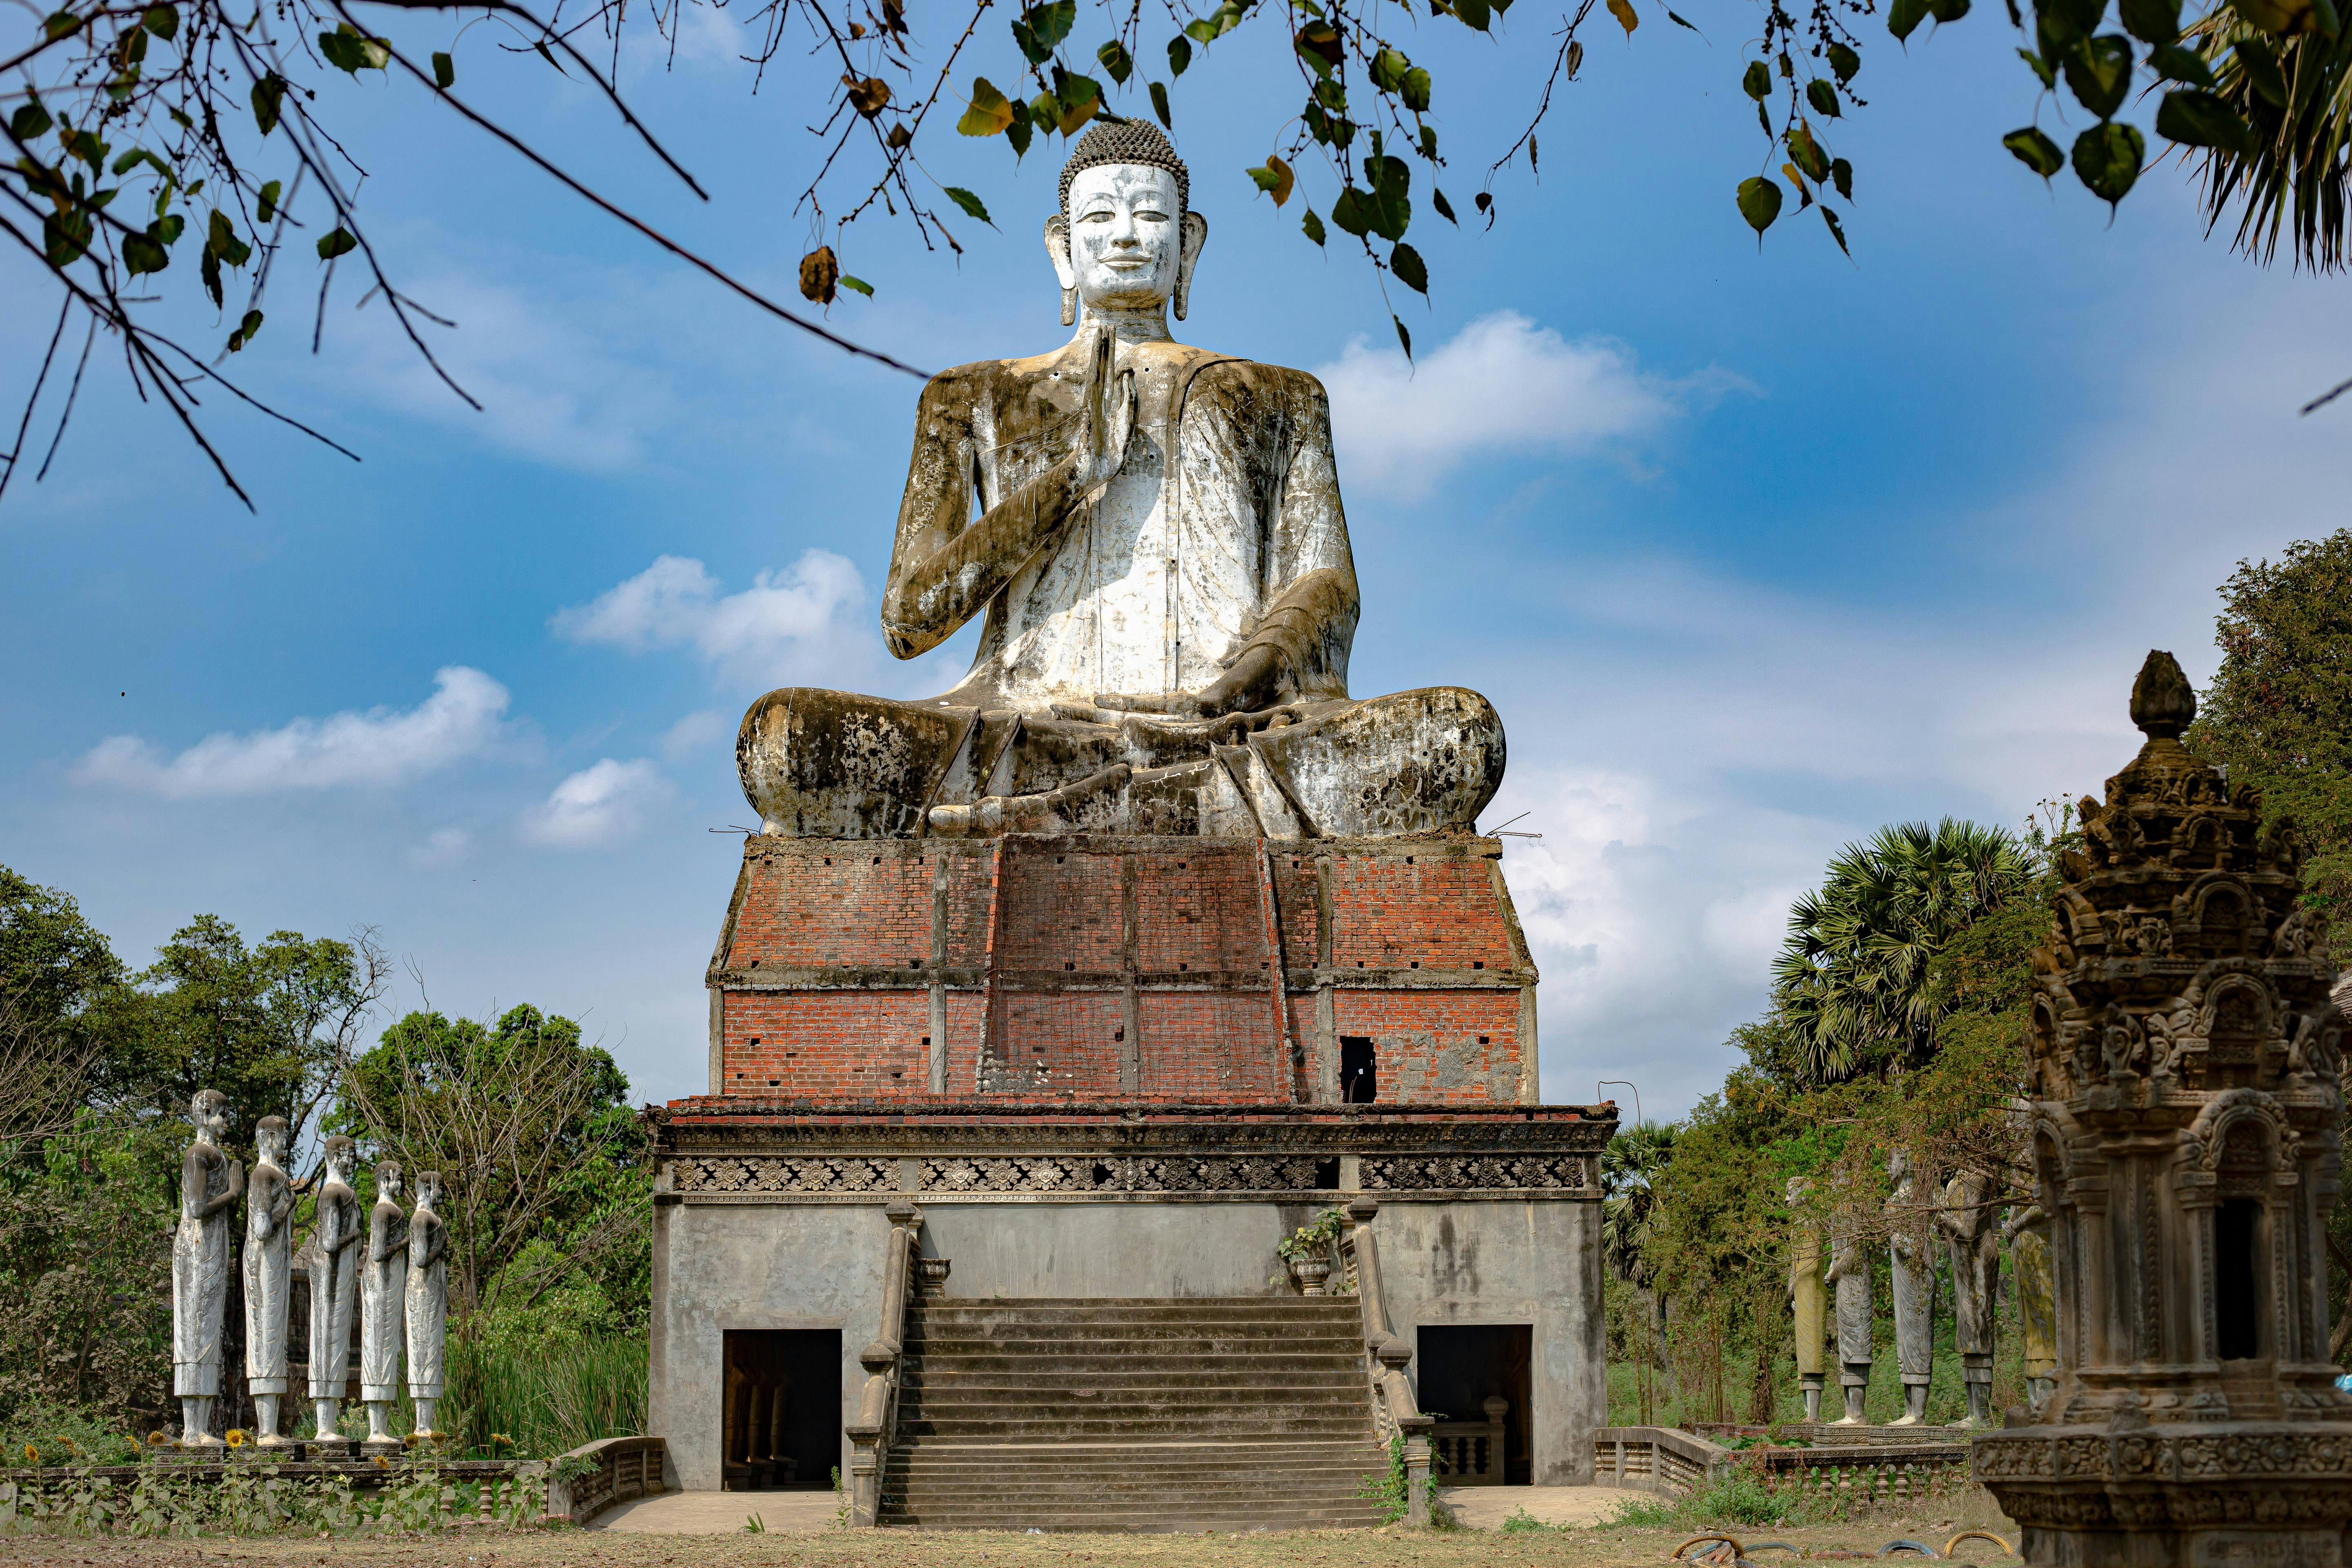 Private tour of the Battambang highlights by tuk-tuk